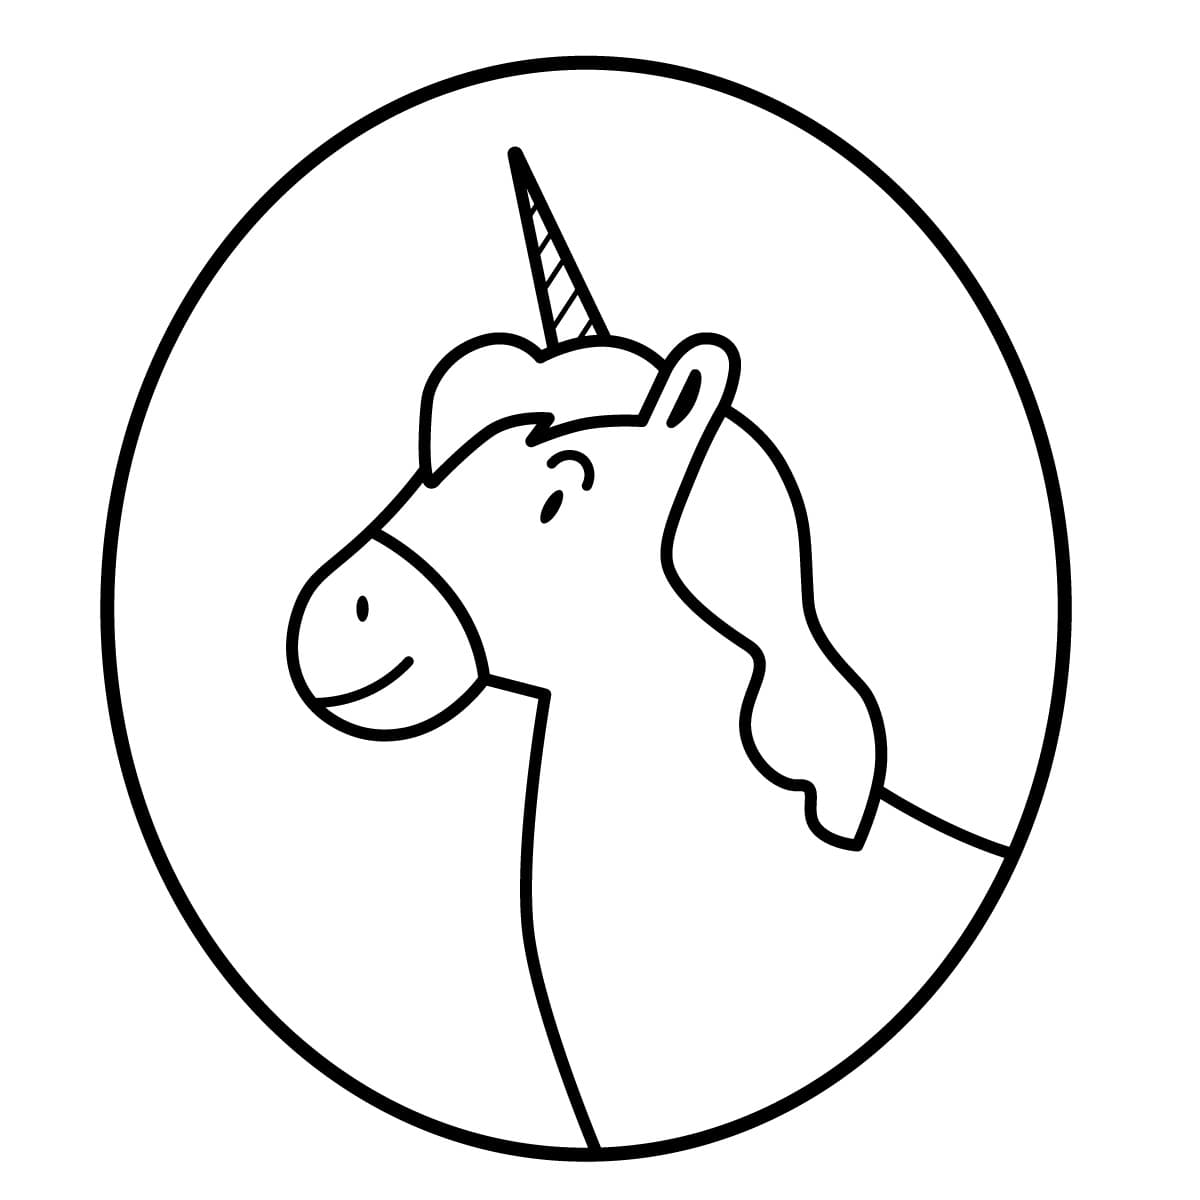 Dibujo de unicornio para colorear e imprimir - Dibujos y colores